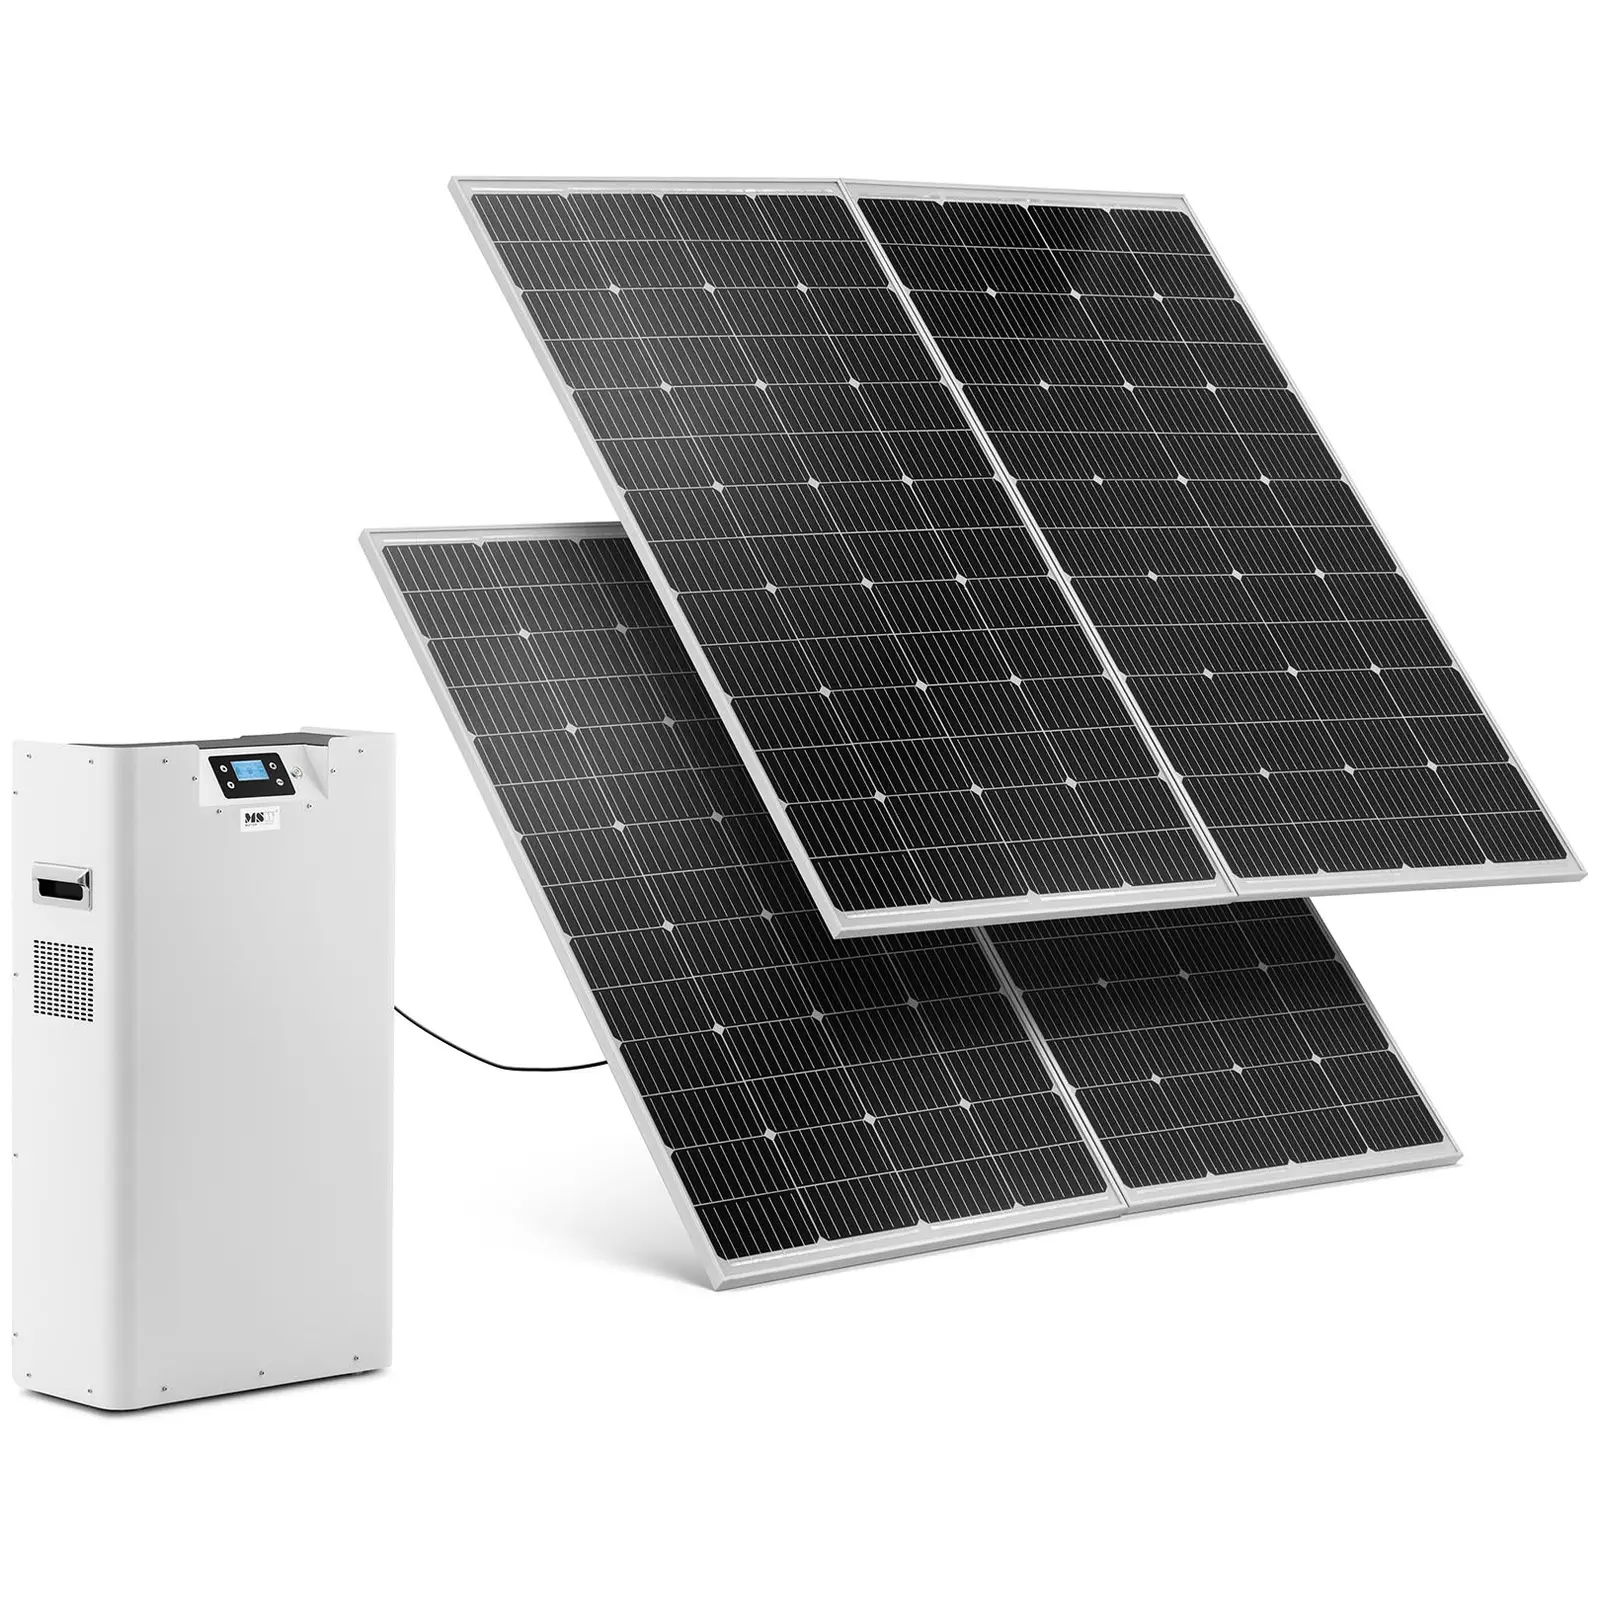 Powerstation med solceller och växelriktare - 2 solpaneler - 3000 W - 230 V